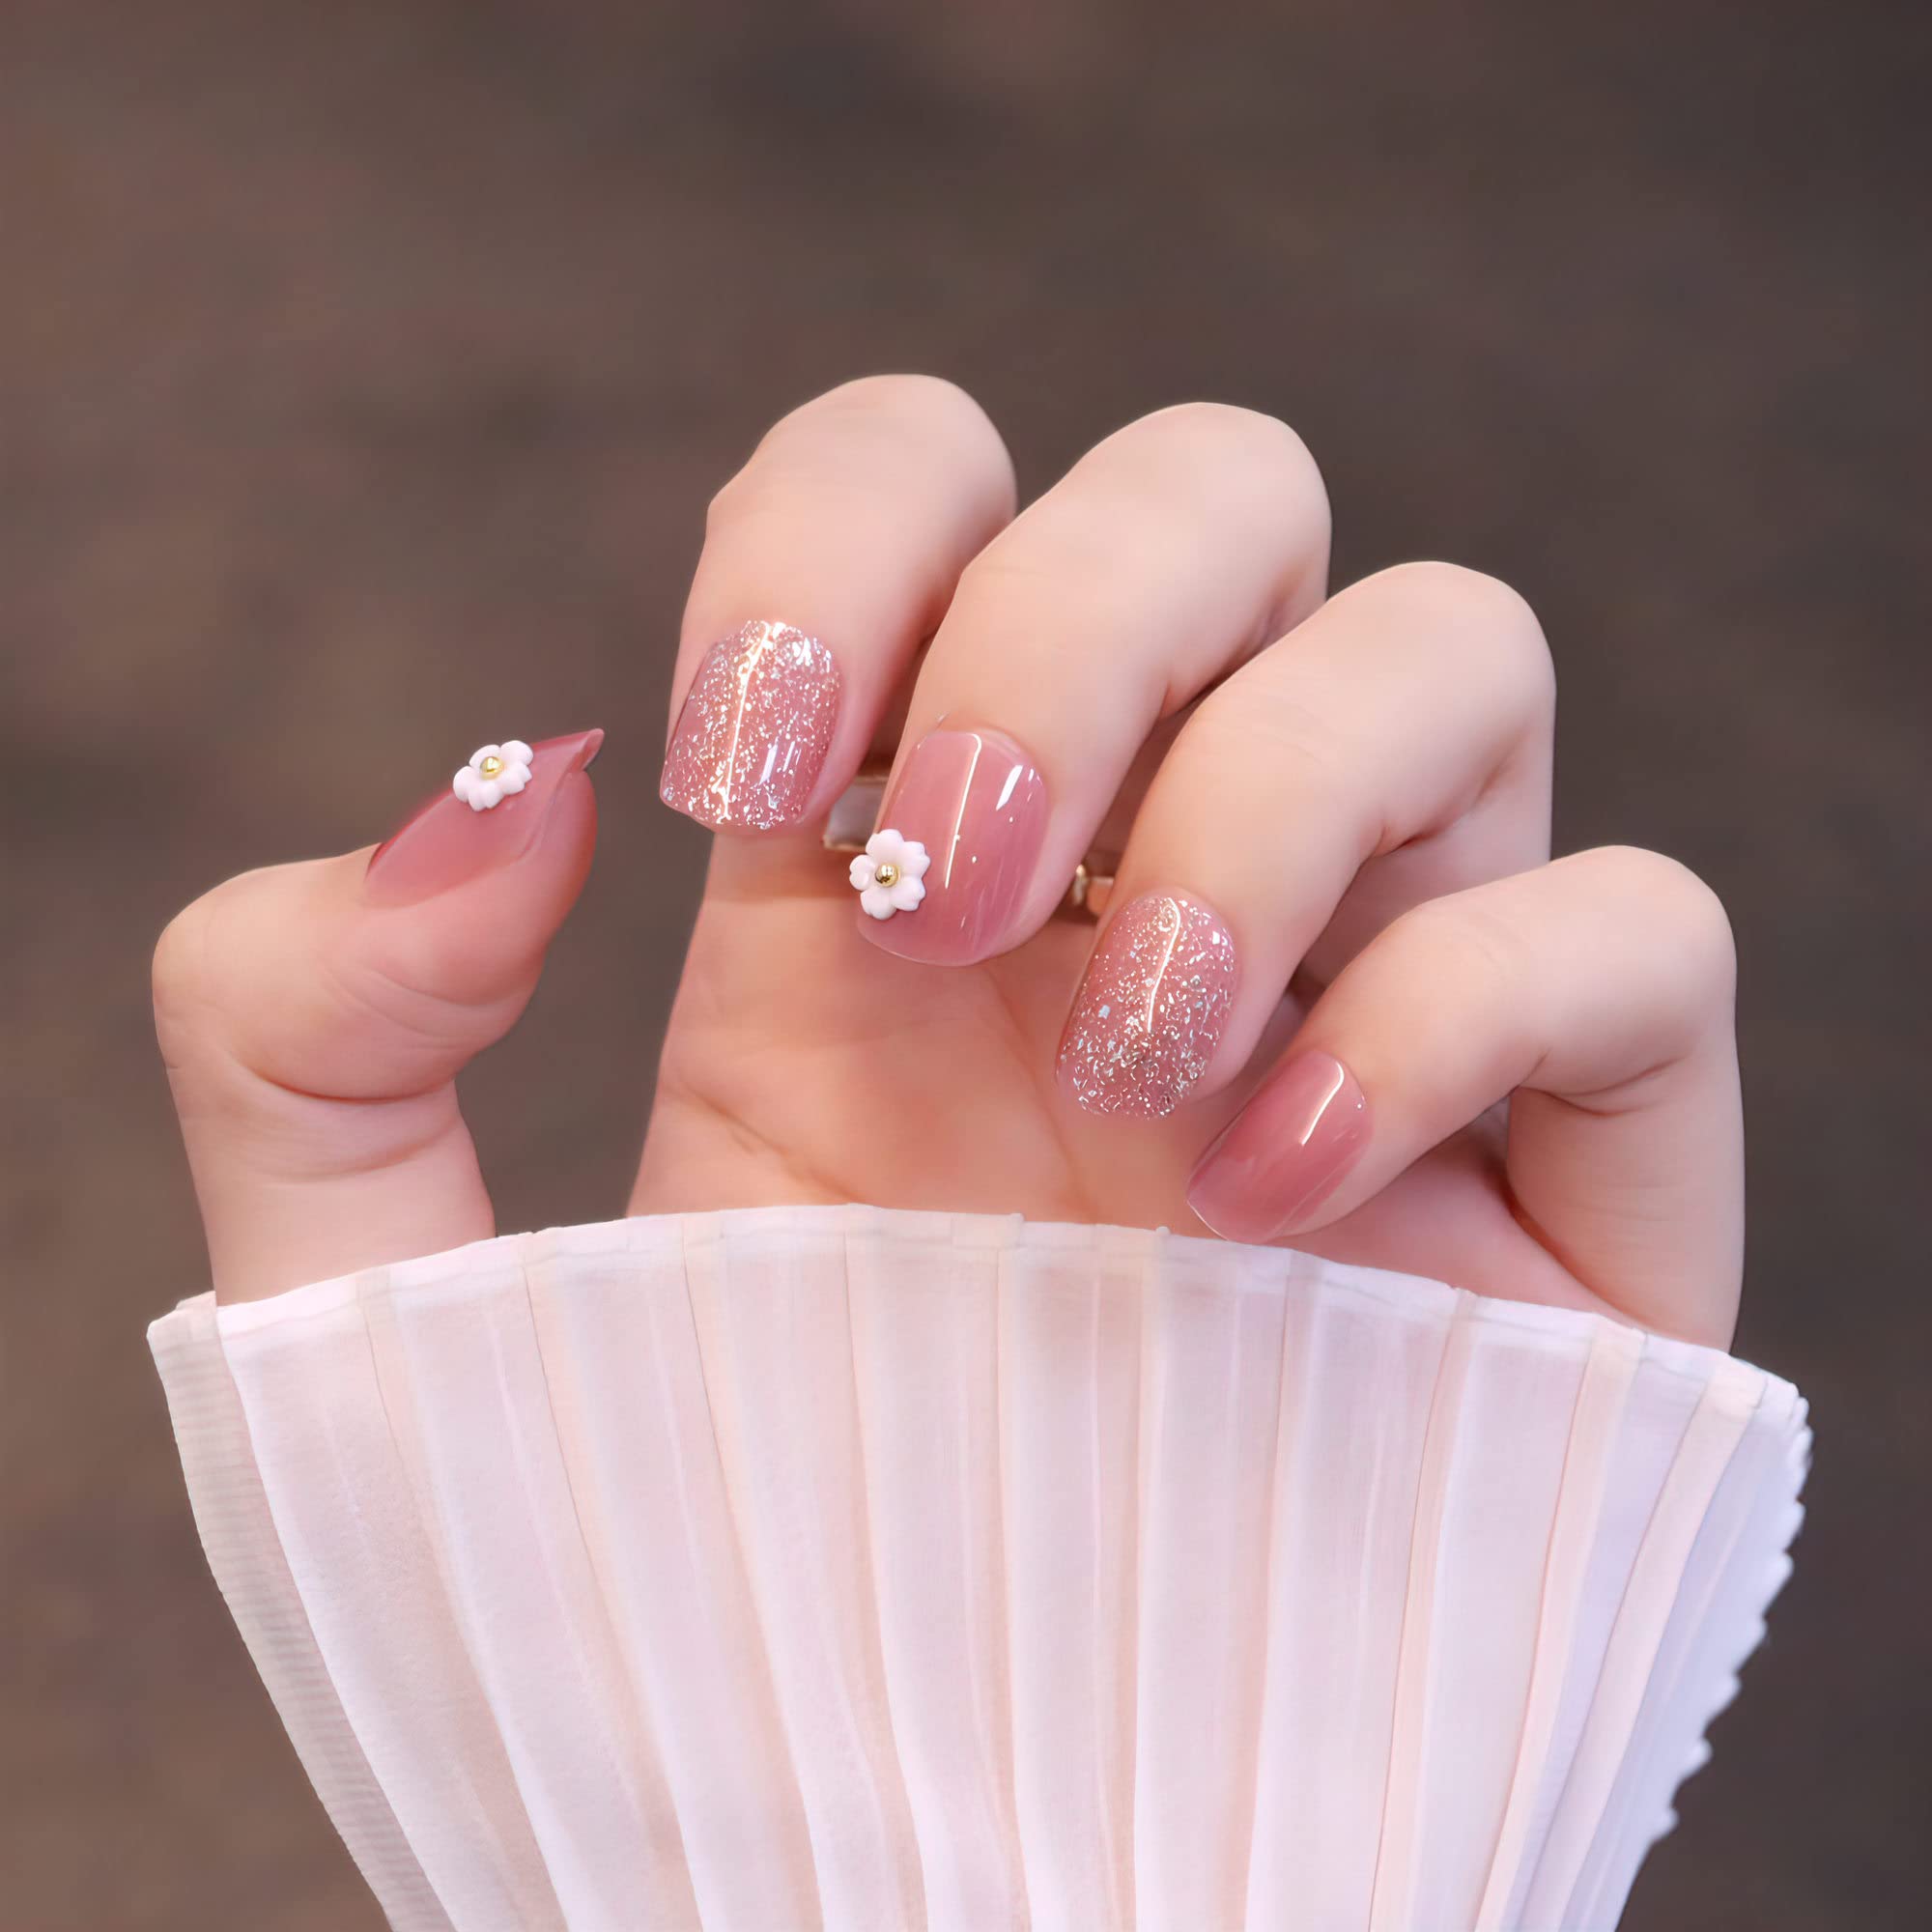 Sáng tạo và nổi bật với những kiểu móng tay 3D cực kỳ độc đáo và đẹp mắt. Điểm nhấn cho bộ móng tay của bạn bằng cách sử dụng các loại 3D nails đầy sáng tạo và tinh tế. Hãy thử ngay tại đây để có một bộ móng tay độc đáo và đẳng cấp.